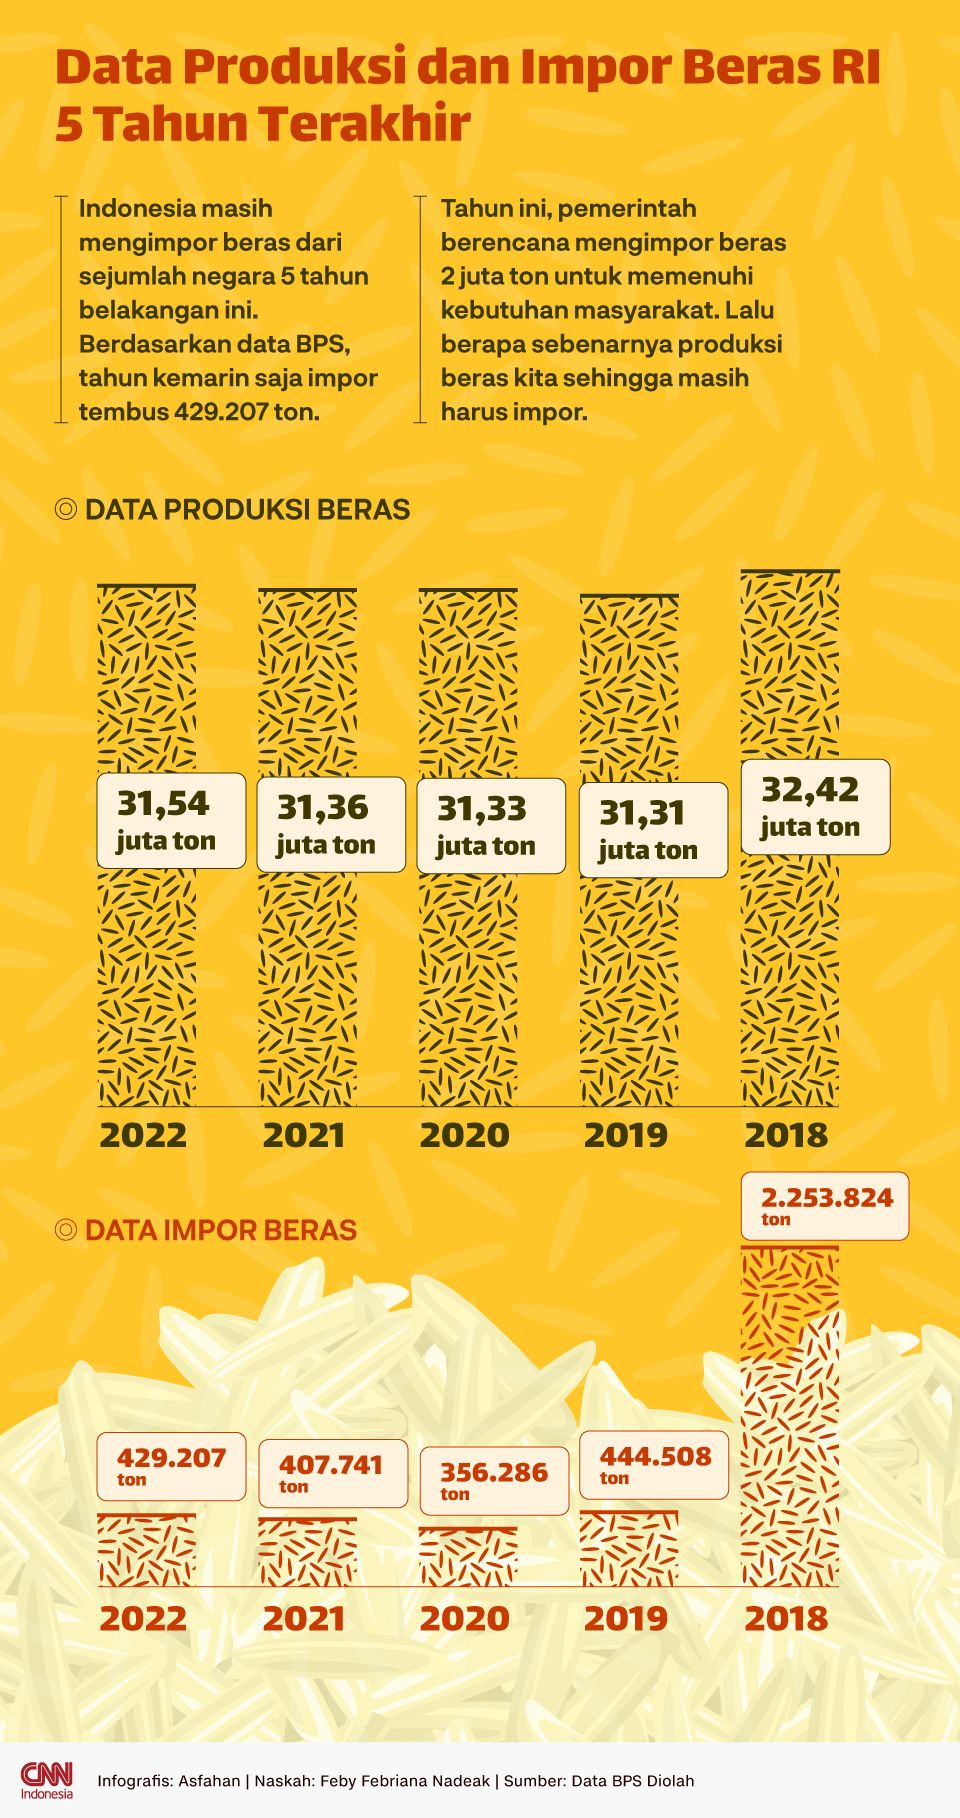 Infografis Data Produksi dan Impor Beras RI 5 Tahun Terakhir